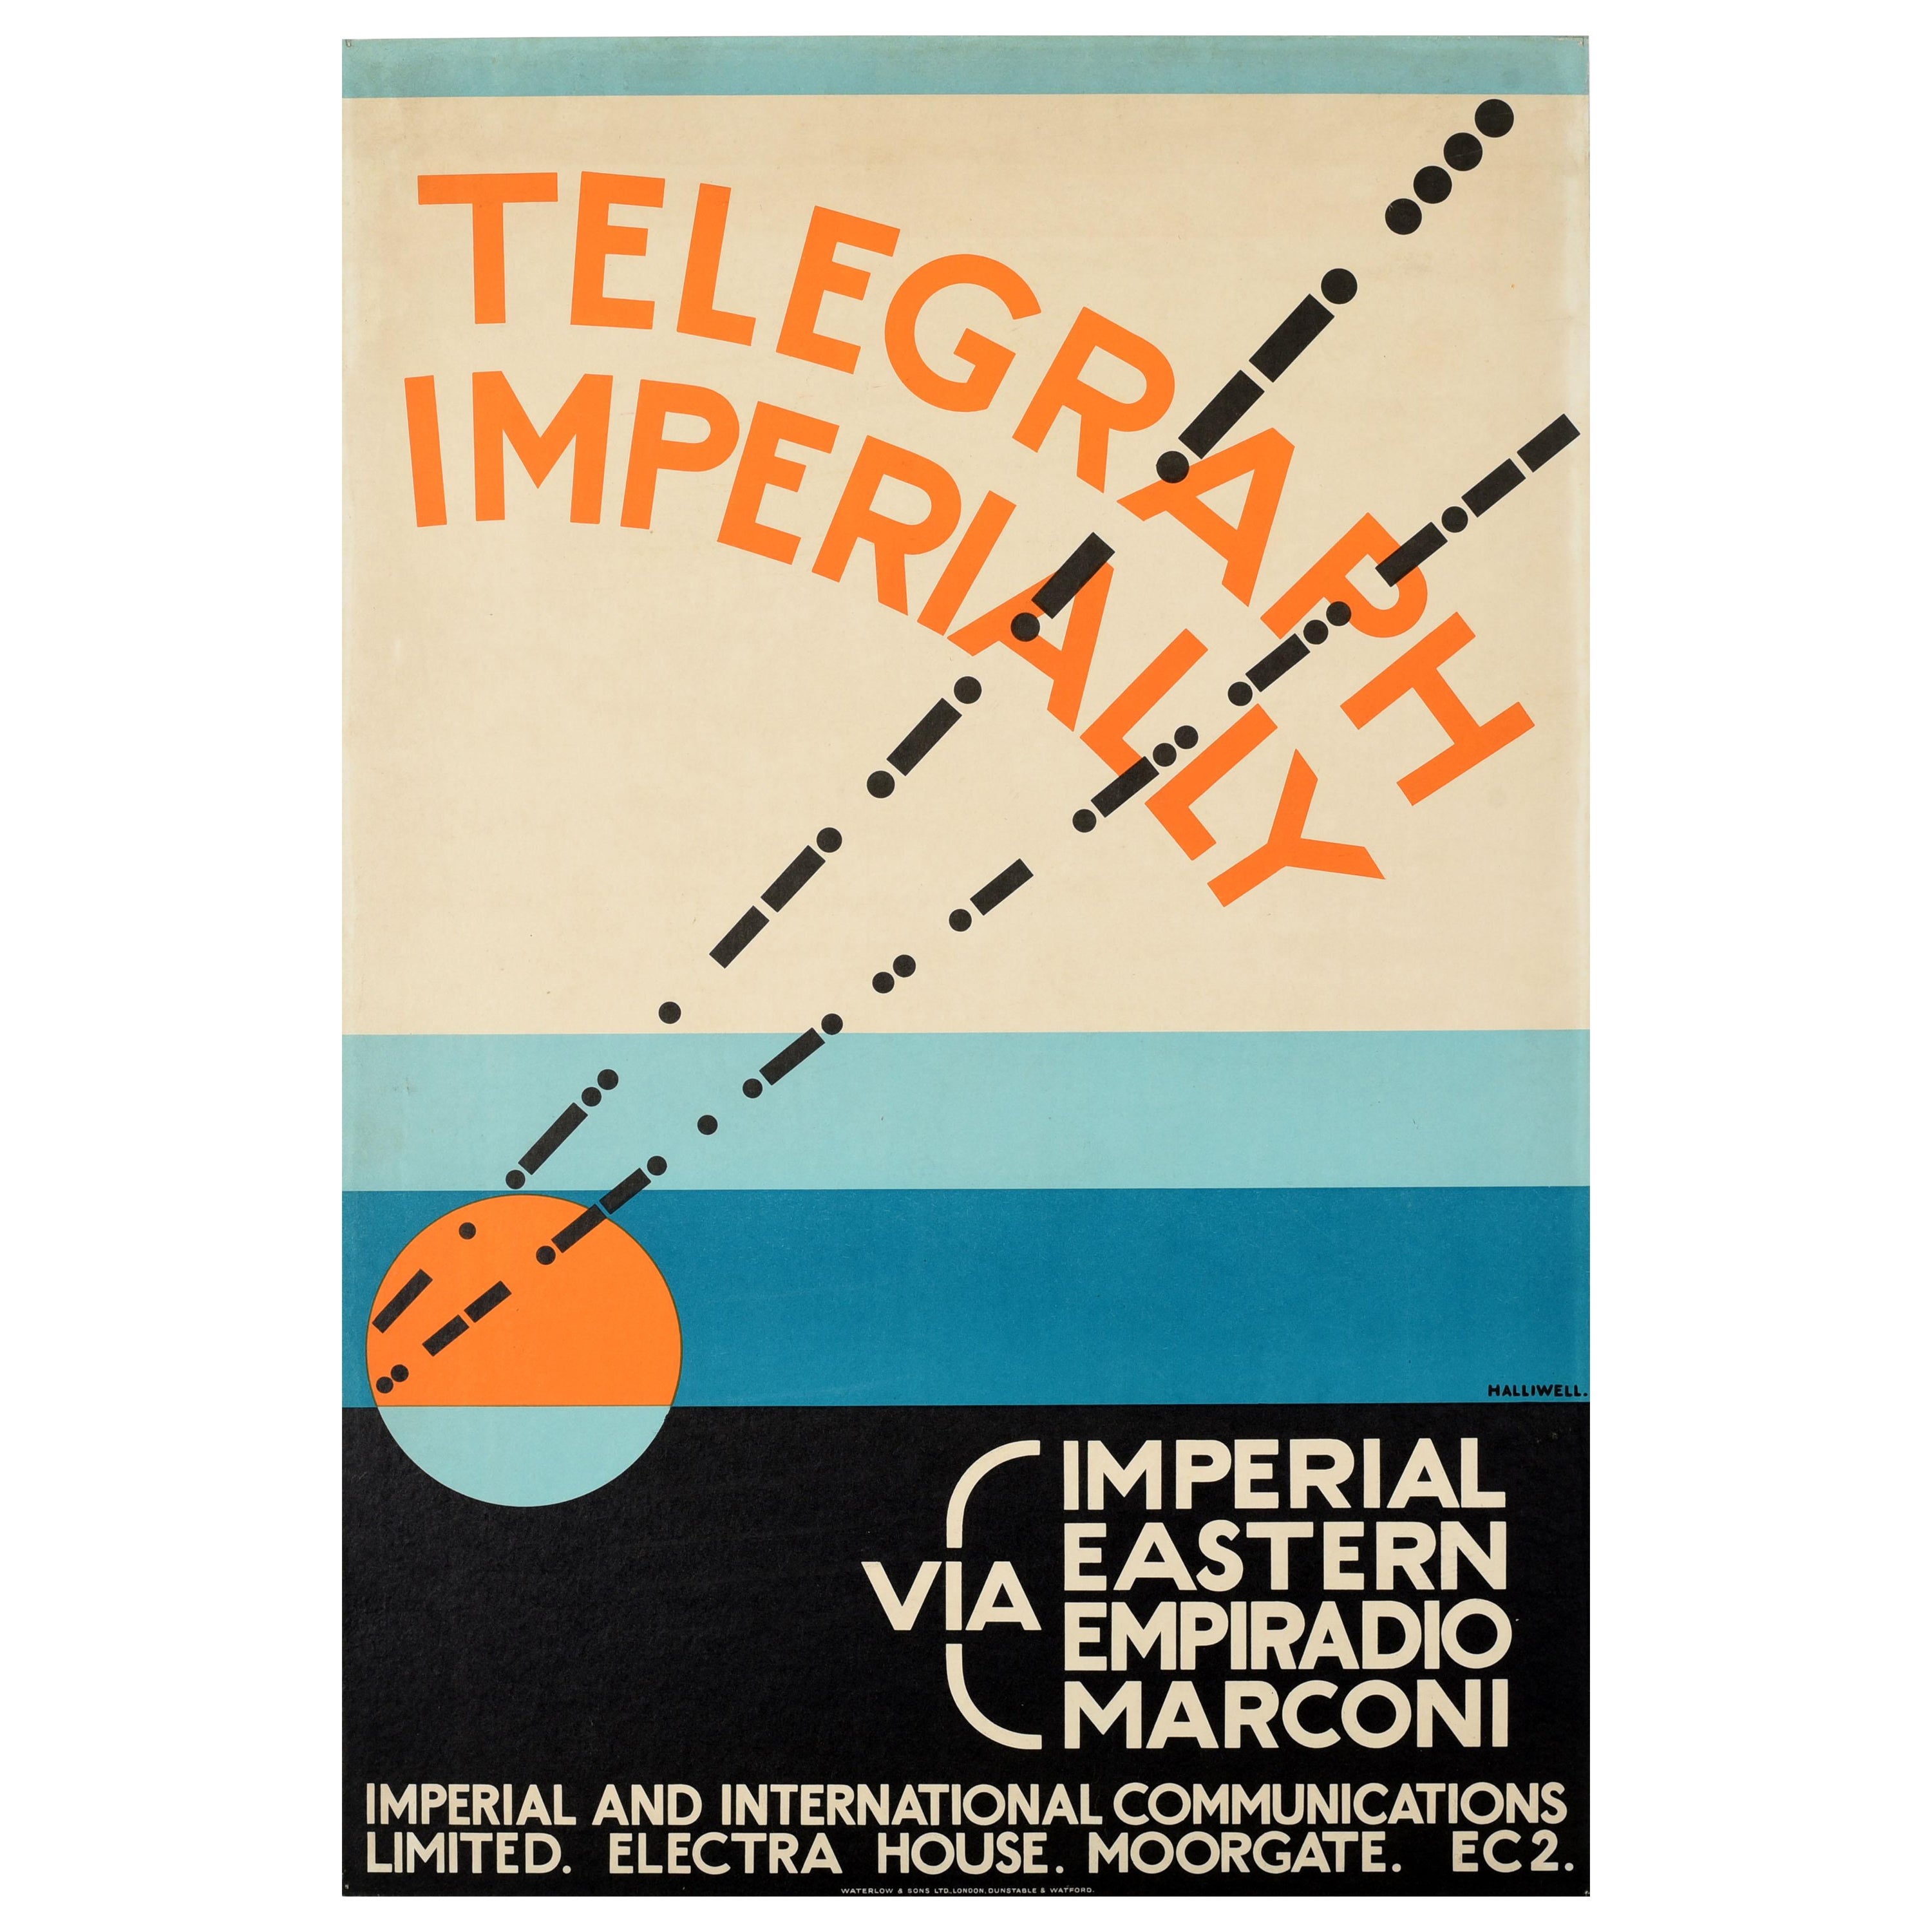 Affiche publicitaire originale du Telegraph Imperially Marconi, design Art Déco